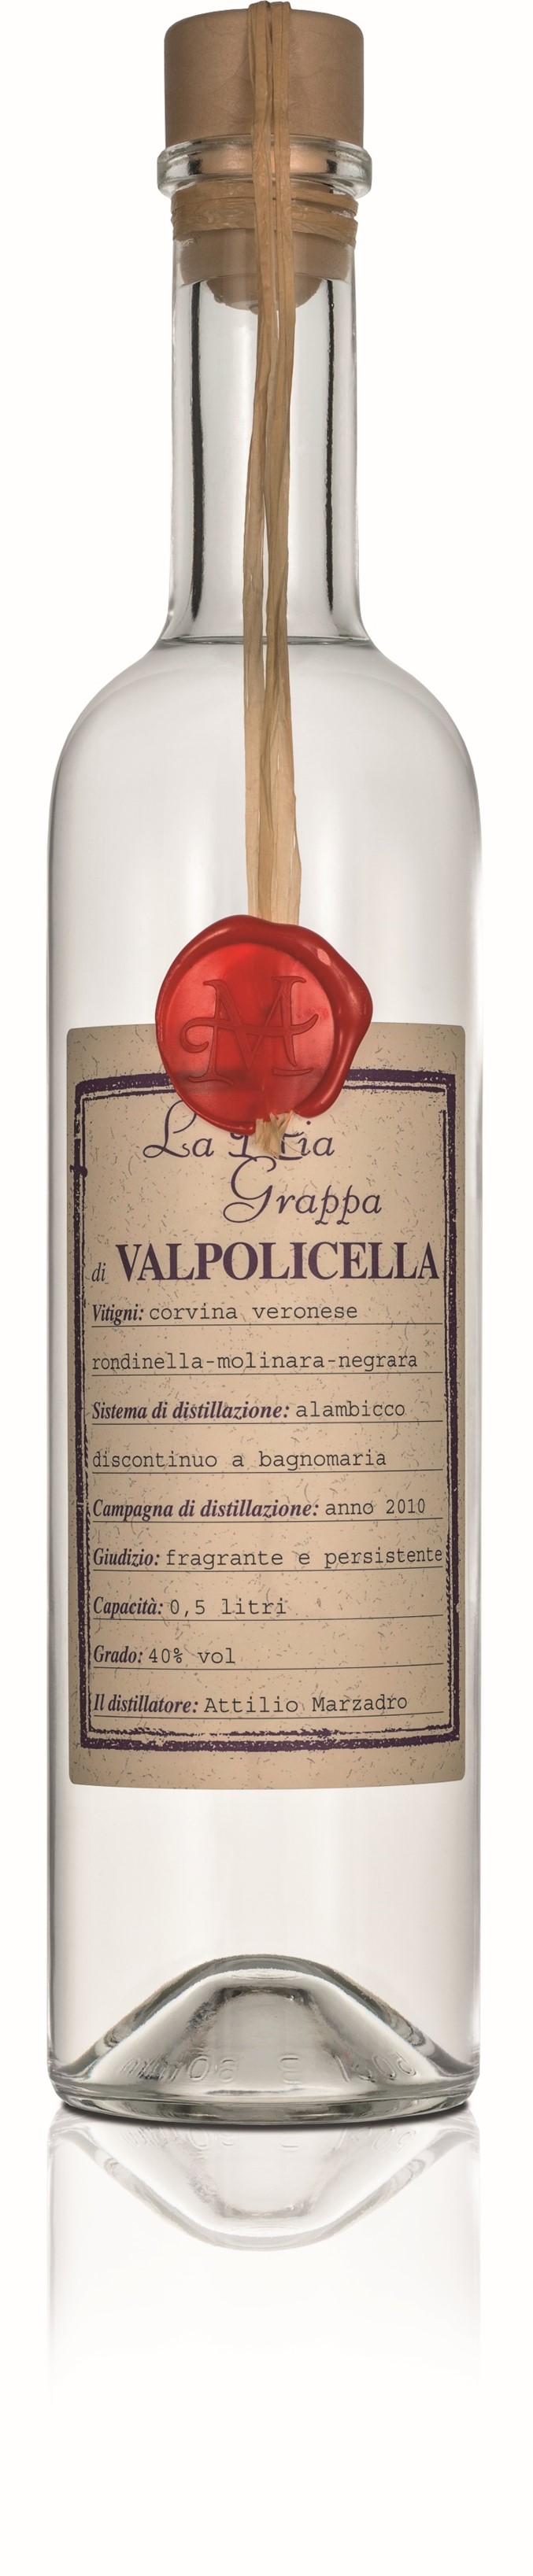 Grappa Valpolicella Vino | Marzadro | Mia 0,5l 40% La di Italia